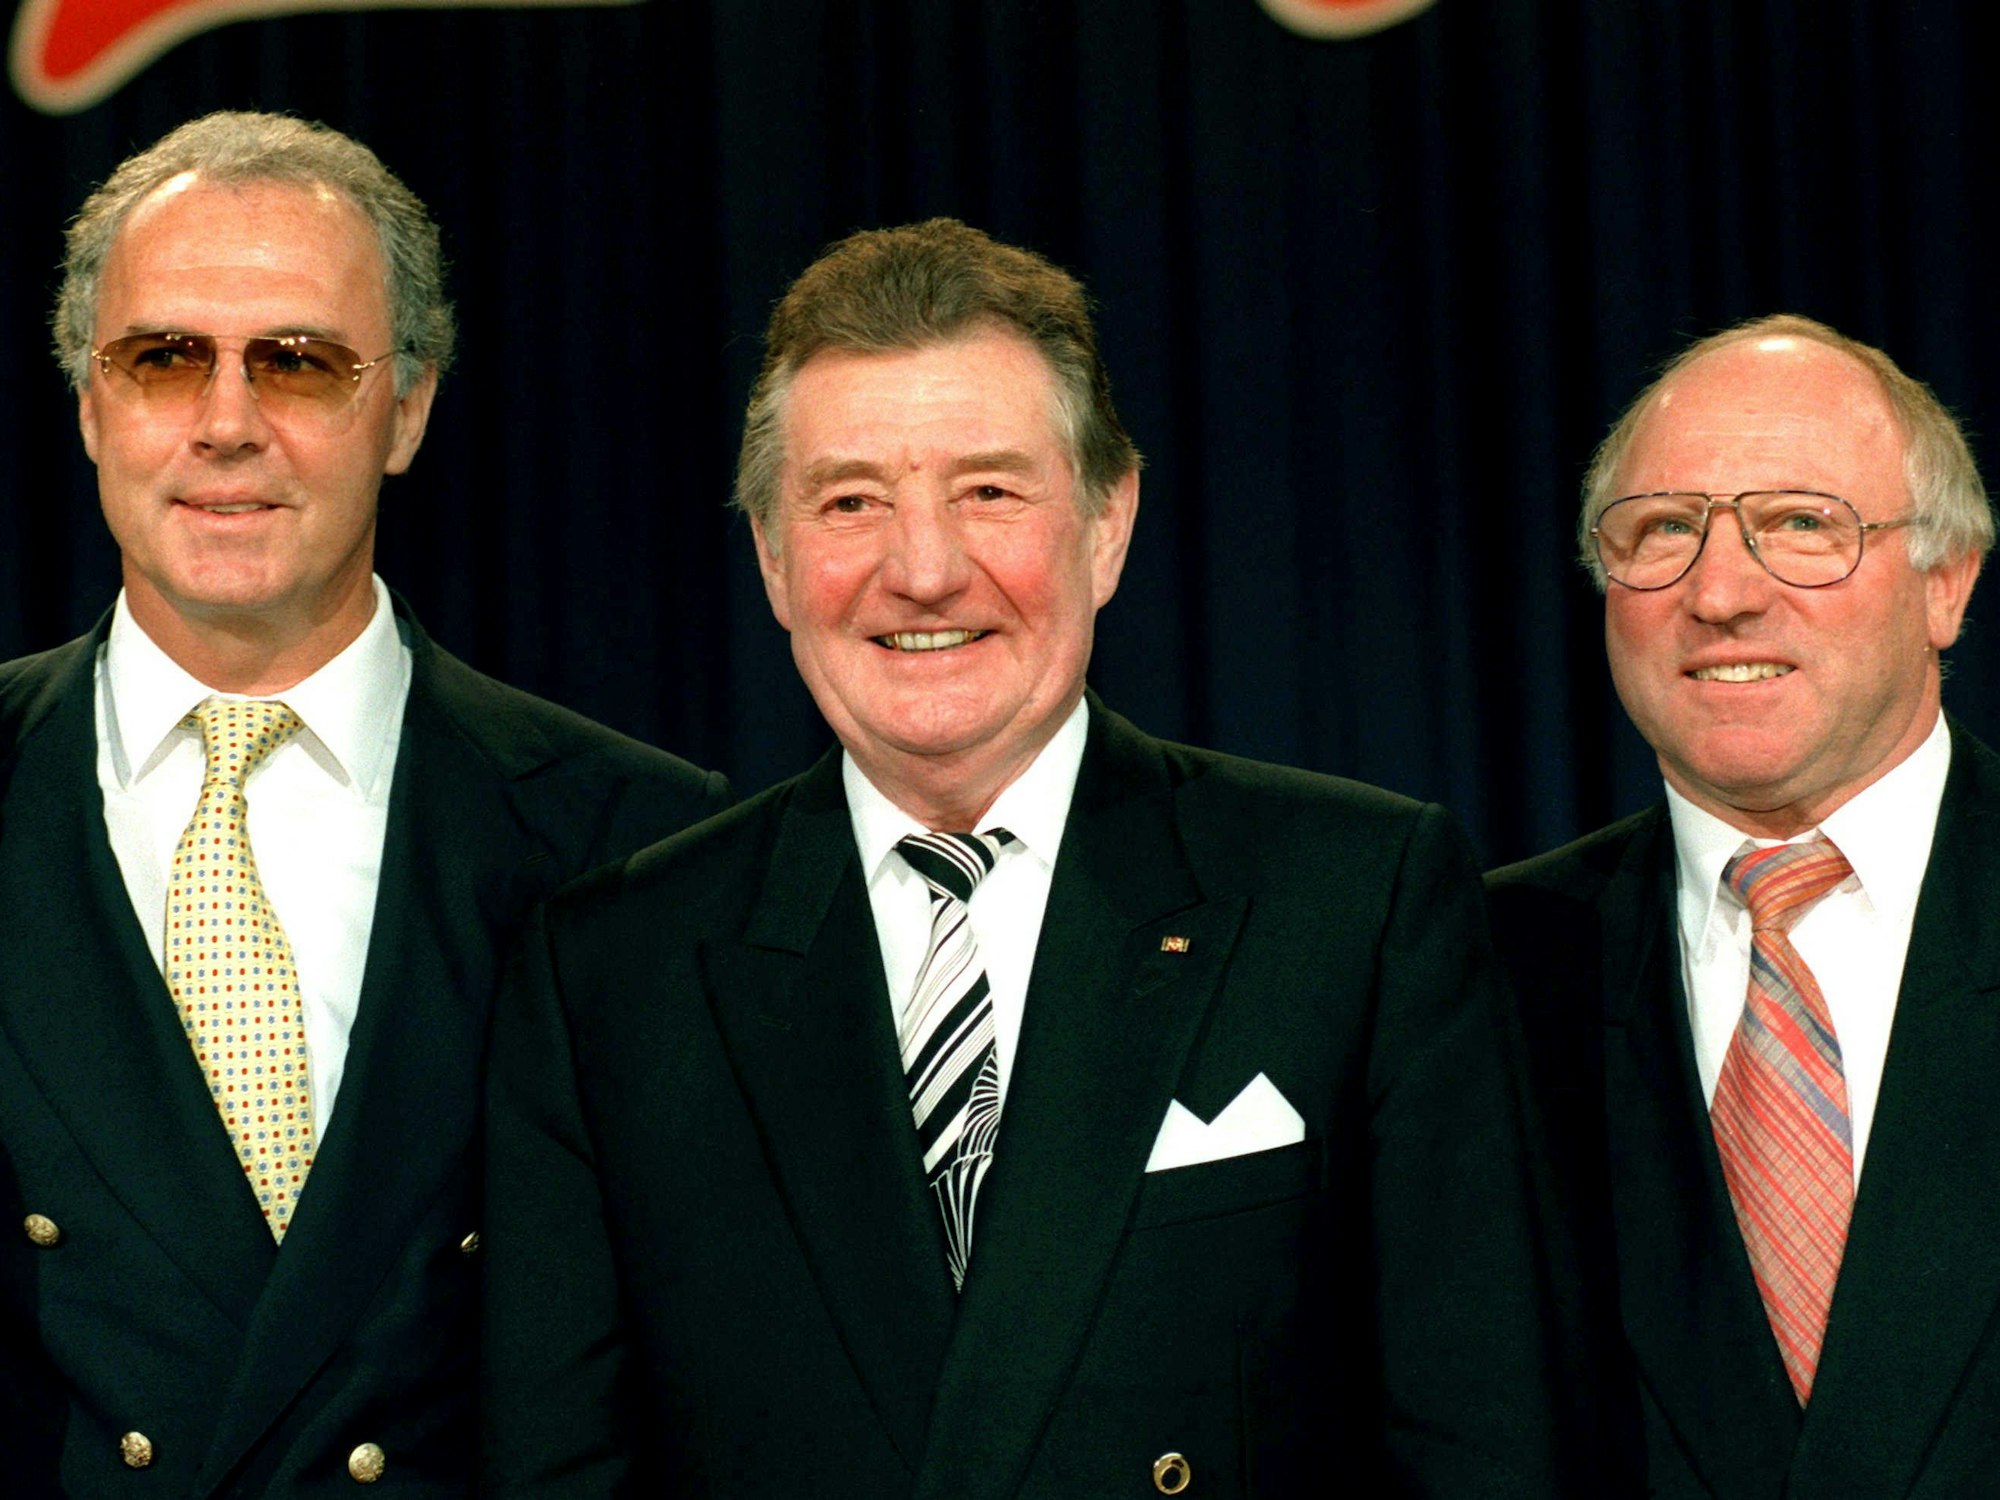 Drei Ehrenspielführer der deutschen Nationalmannschaft unter sich: Bayern-Präsident Franz Beckenbauer, Fritz Walter und HSV-Präsident Uwe Seeler.